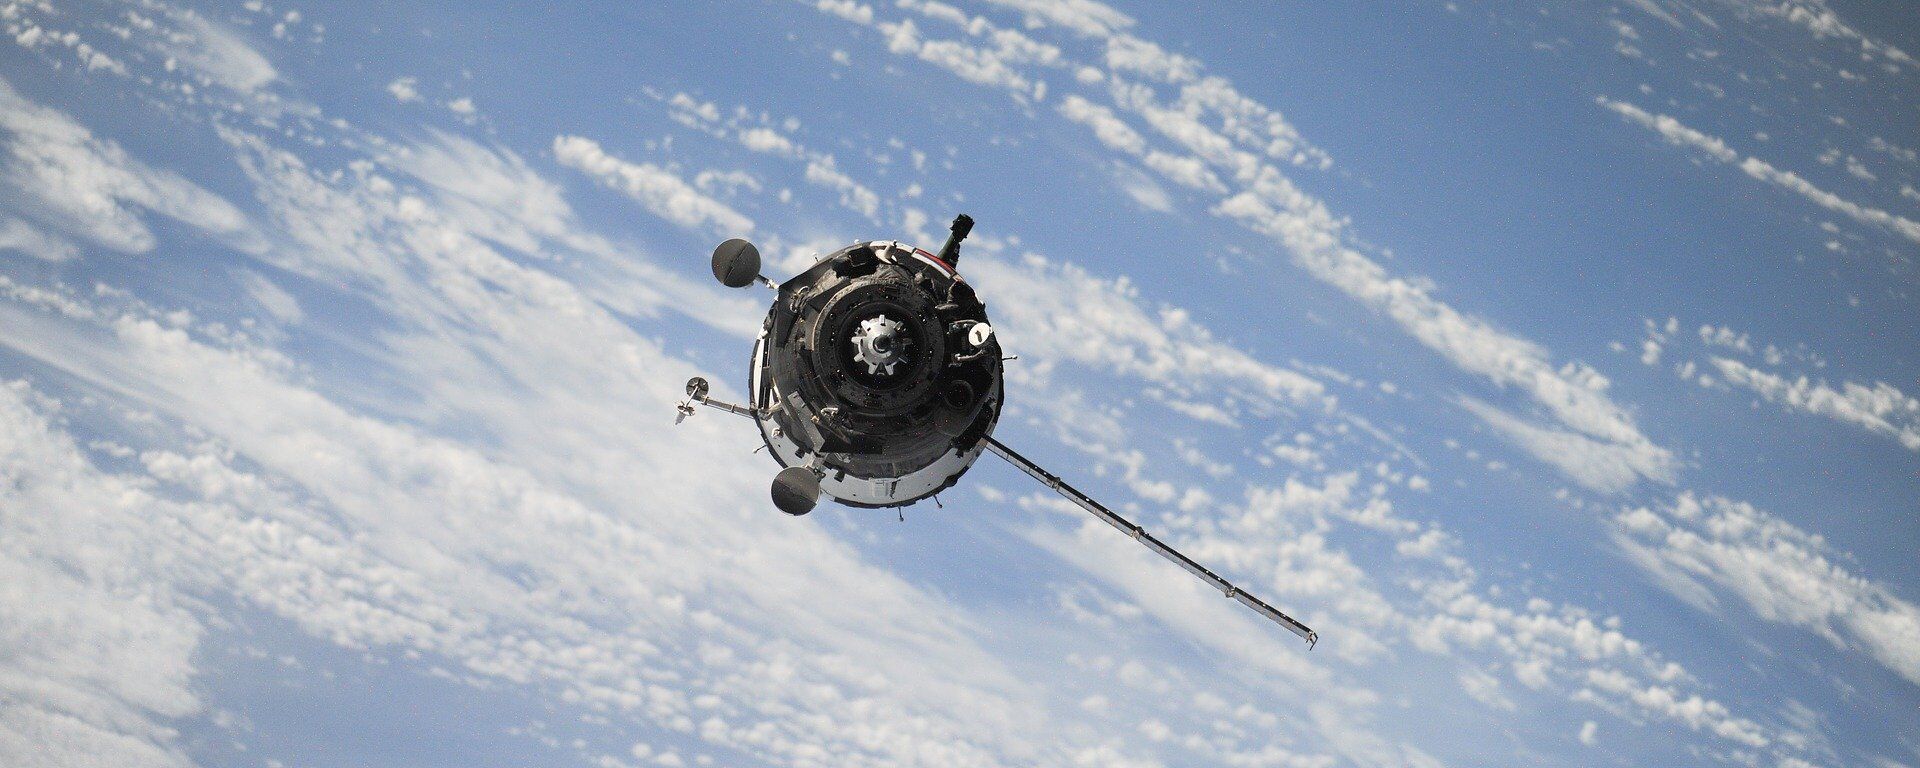 Un satélite (imagen referencial) - Sputnik Mundo, 1920, 04.12.2019